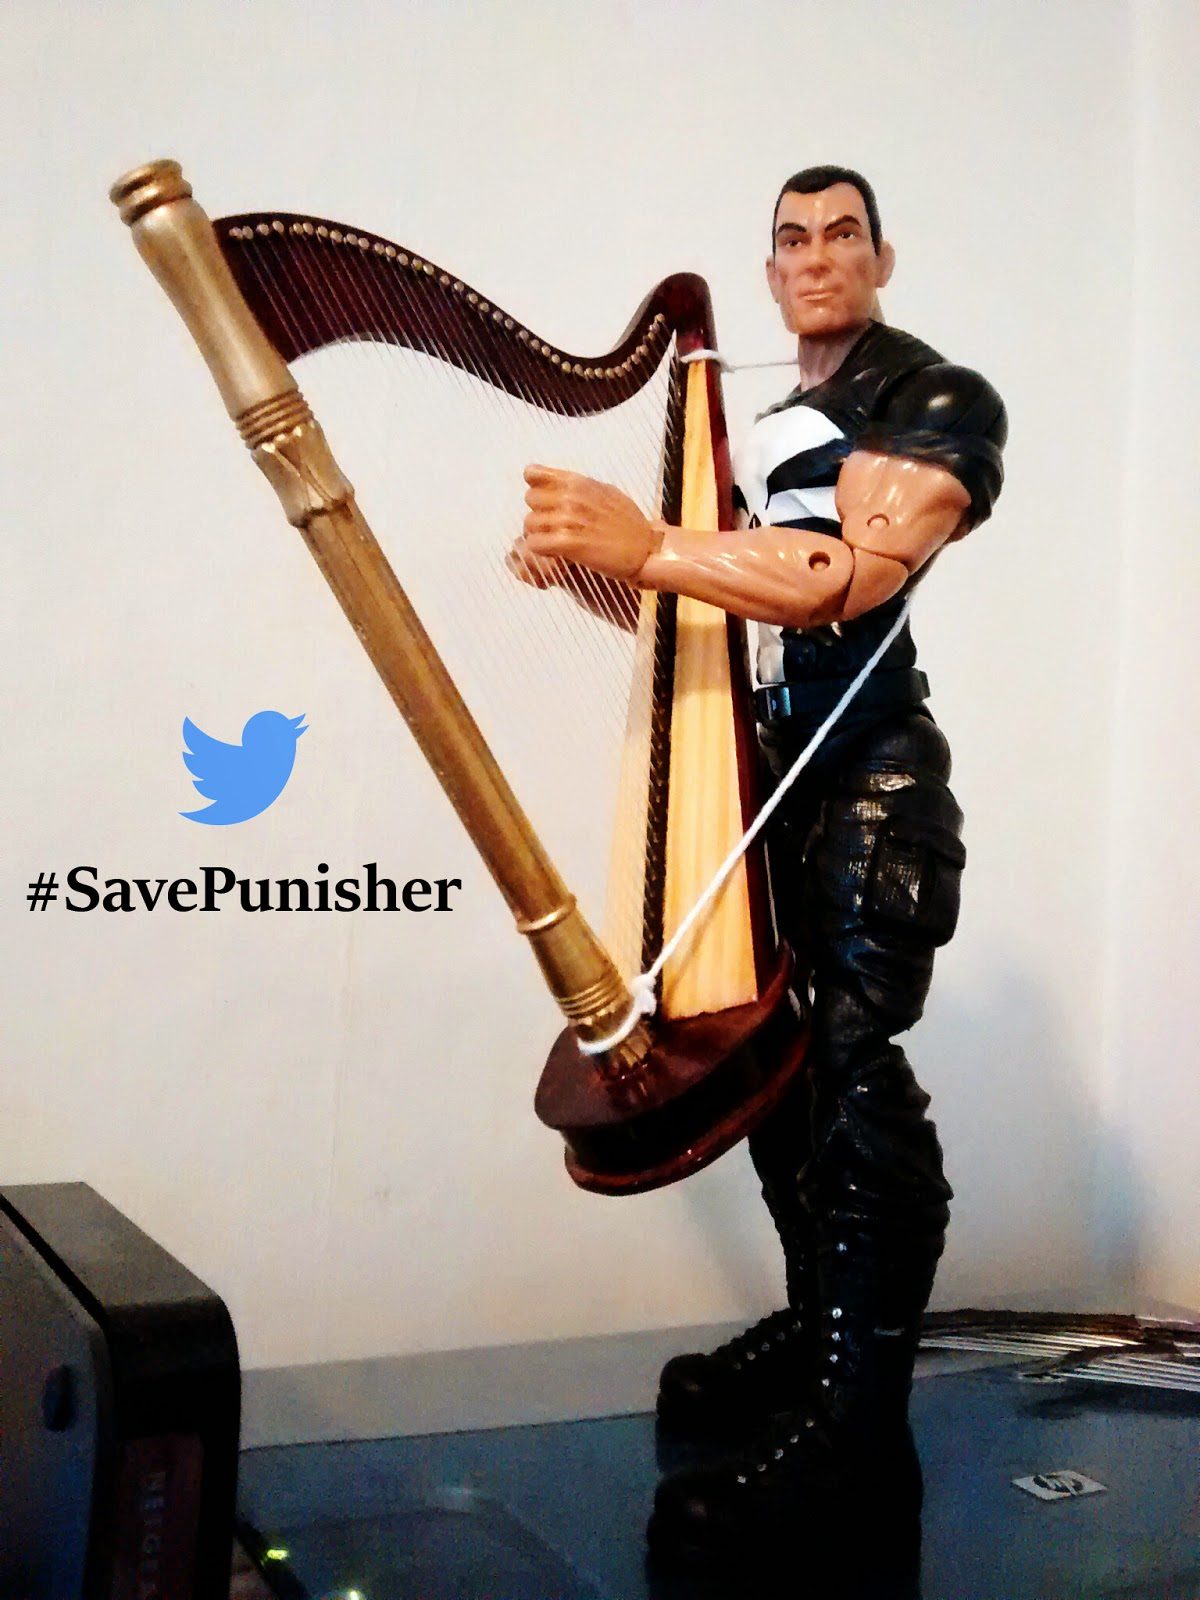 SavePunisher